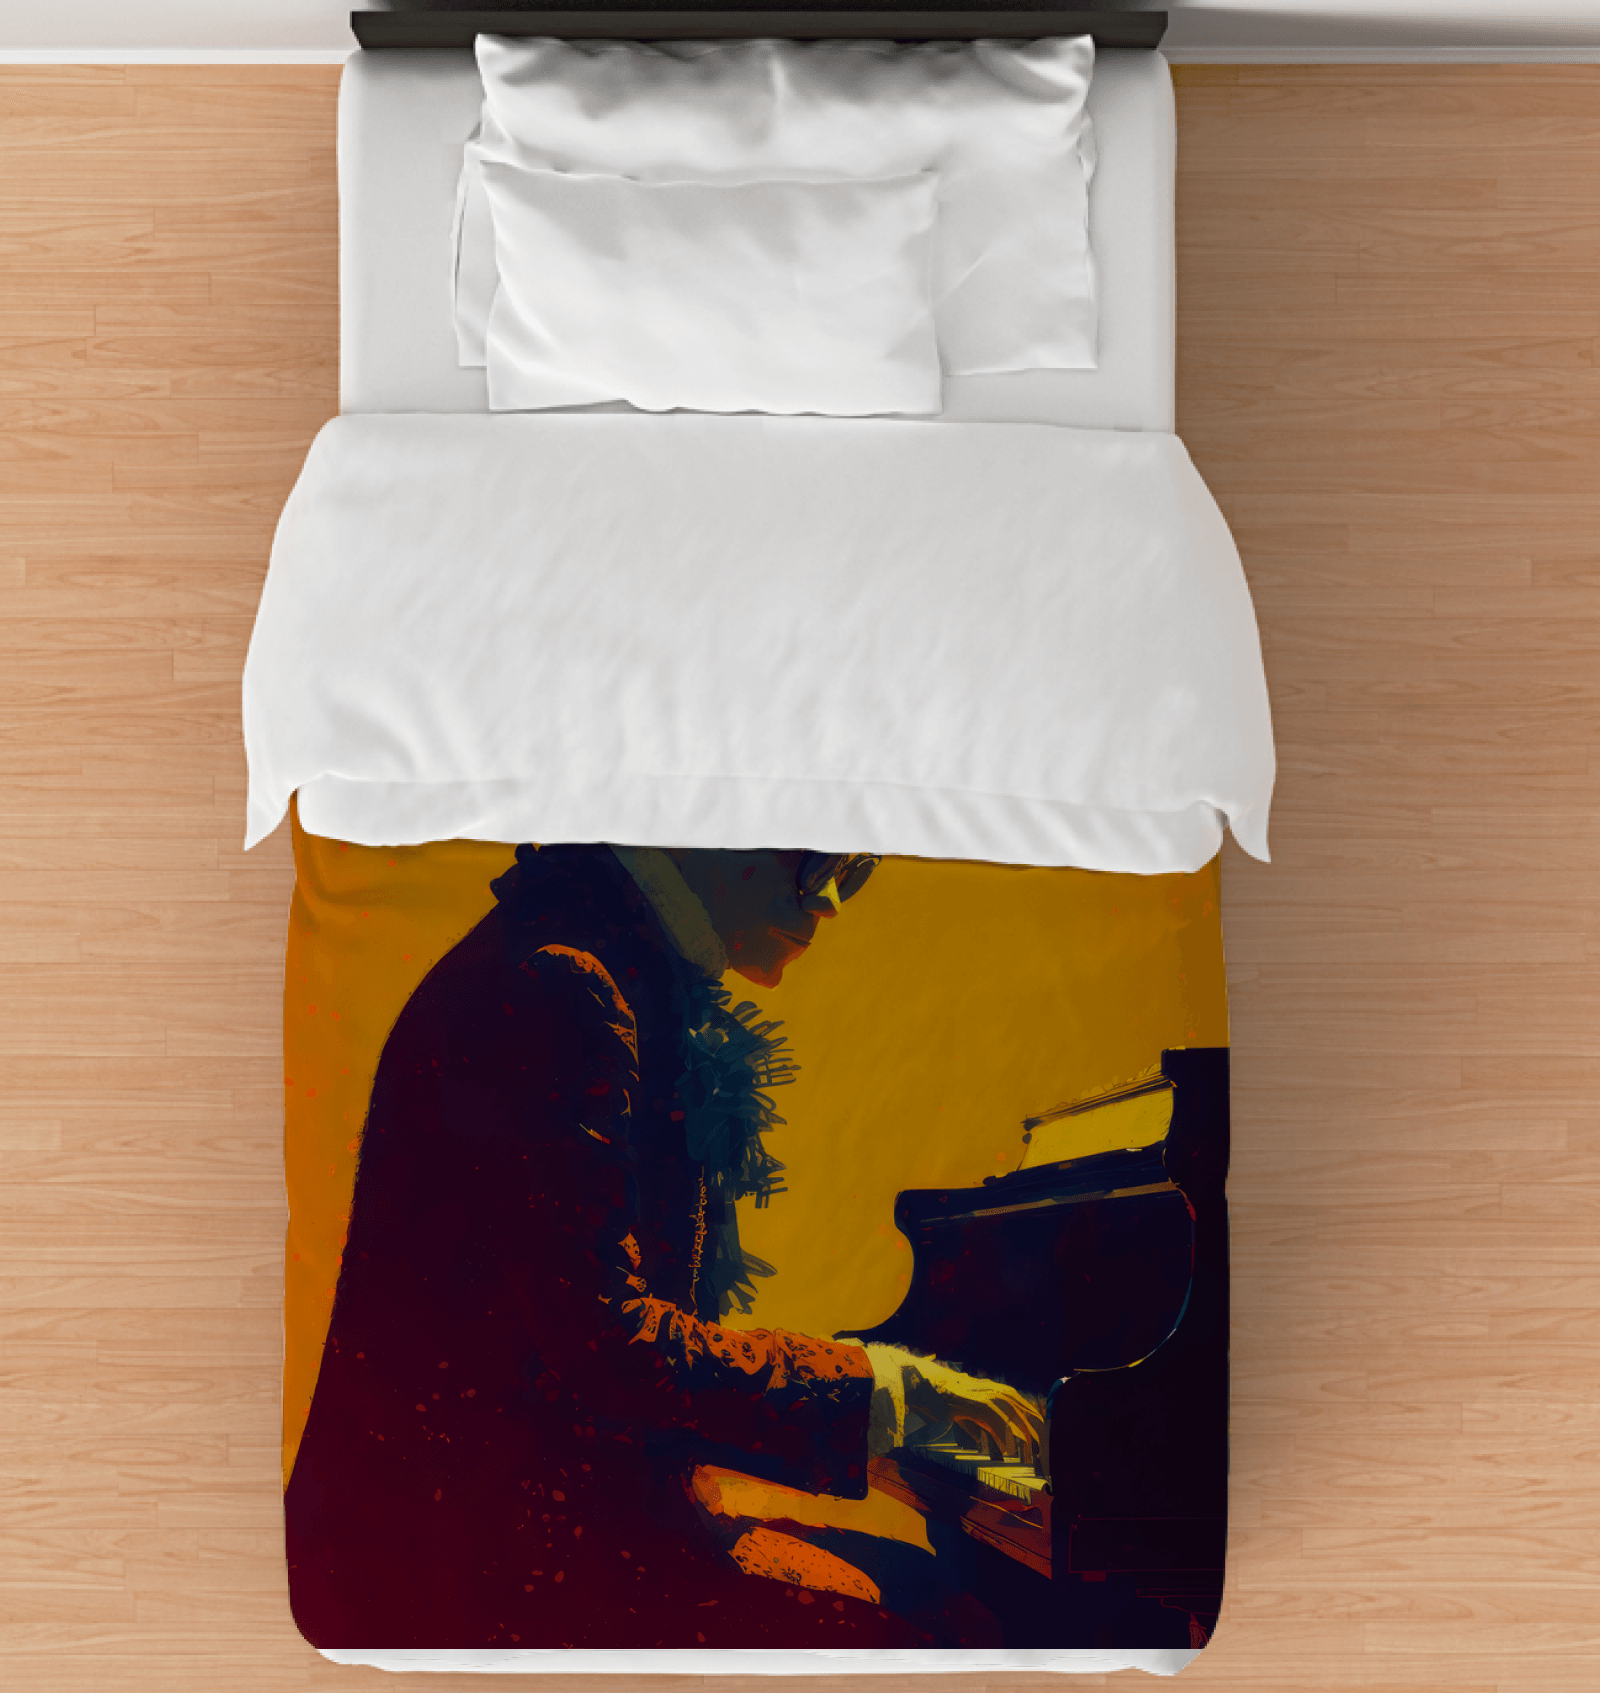 SurArt 93 Duvet Cover elegantly displayed on a bed, emphasizing its modern elegance.